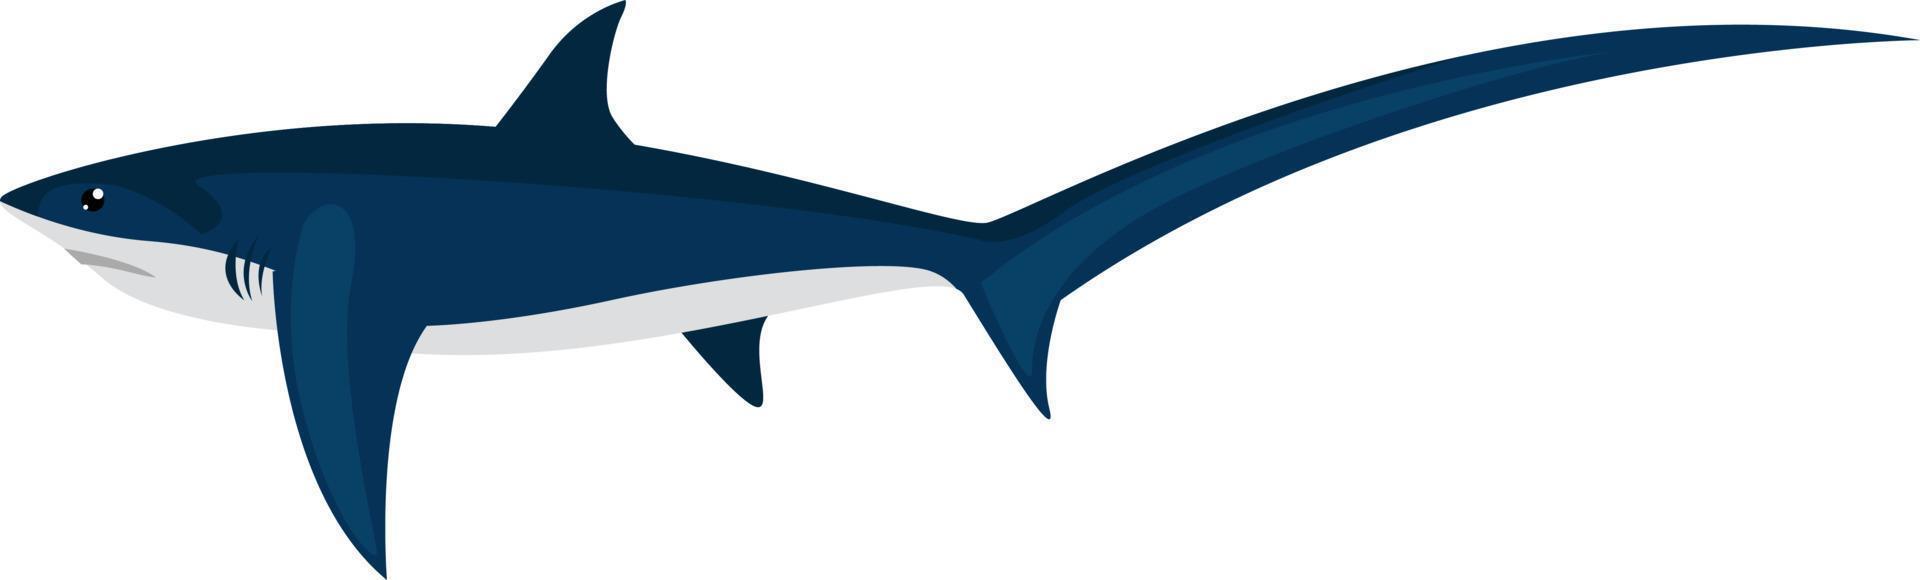 tröskverk haj, illustration, vektor på vit bakgrund.